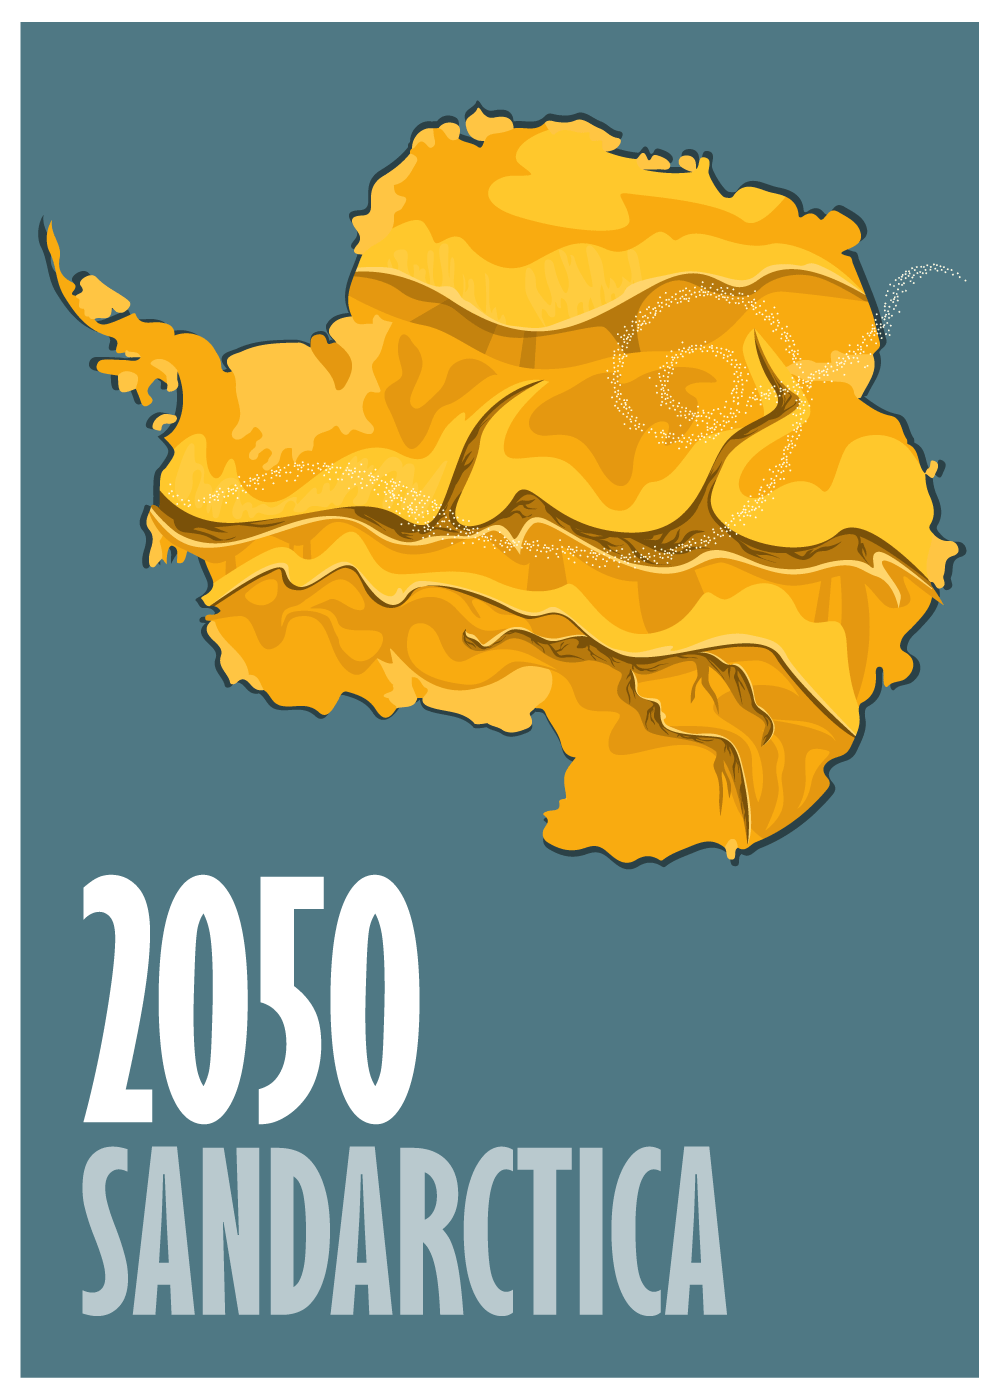 Billede af SANDARCTICA 2050 - klimaplakat